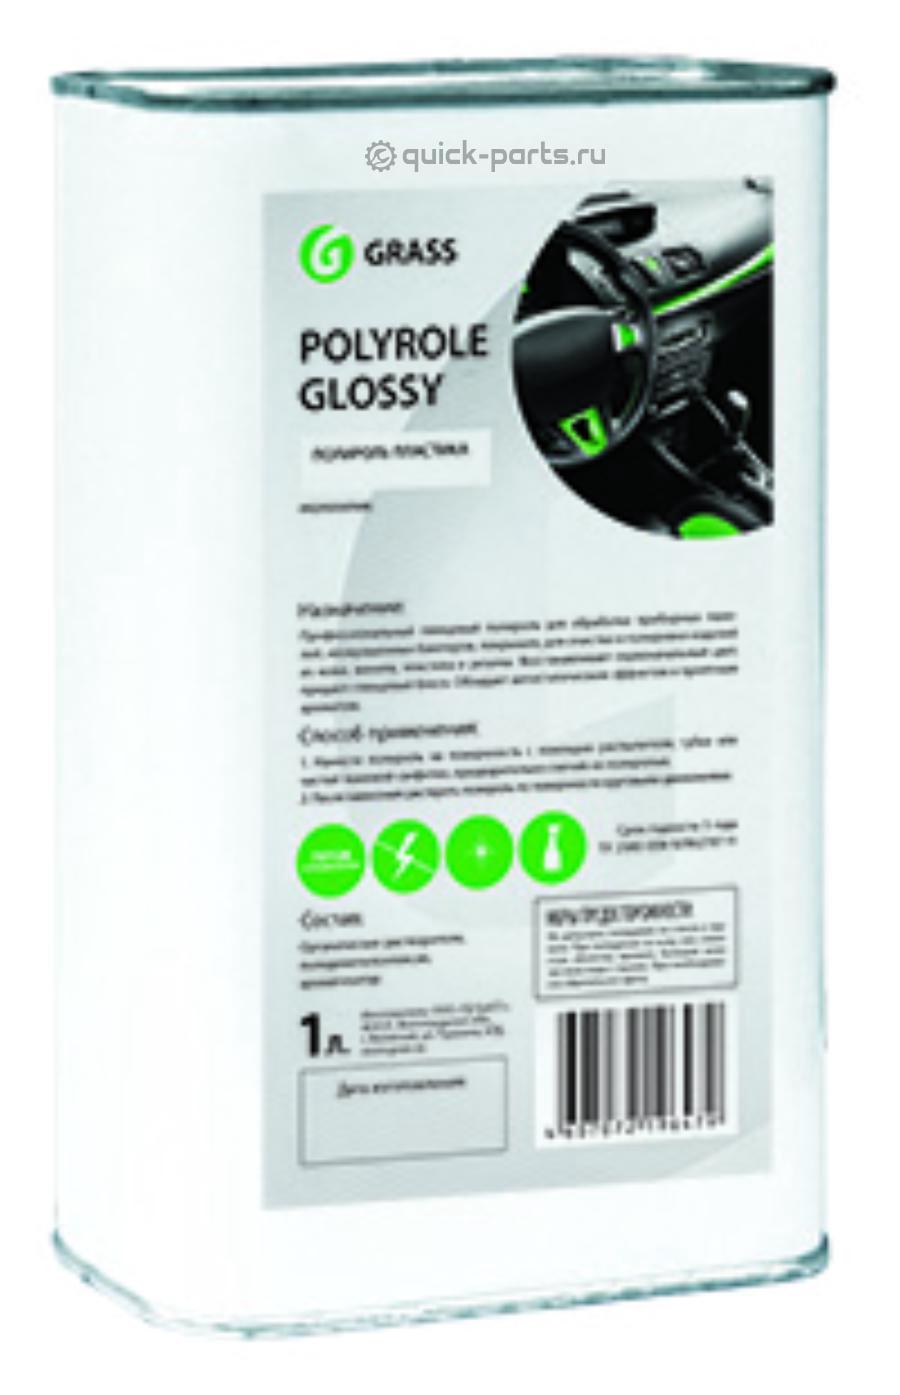 120100 GRASS Полироль-очиститель пластика глянцевый "Polyrole Glossy" (канистра 1 л)